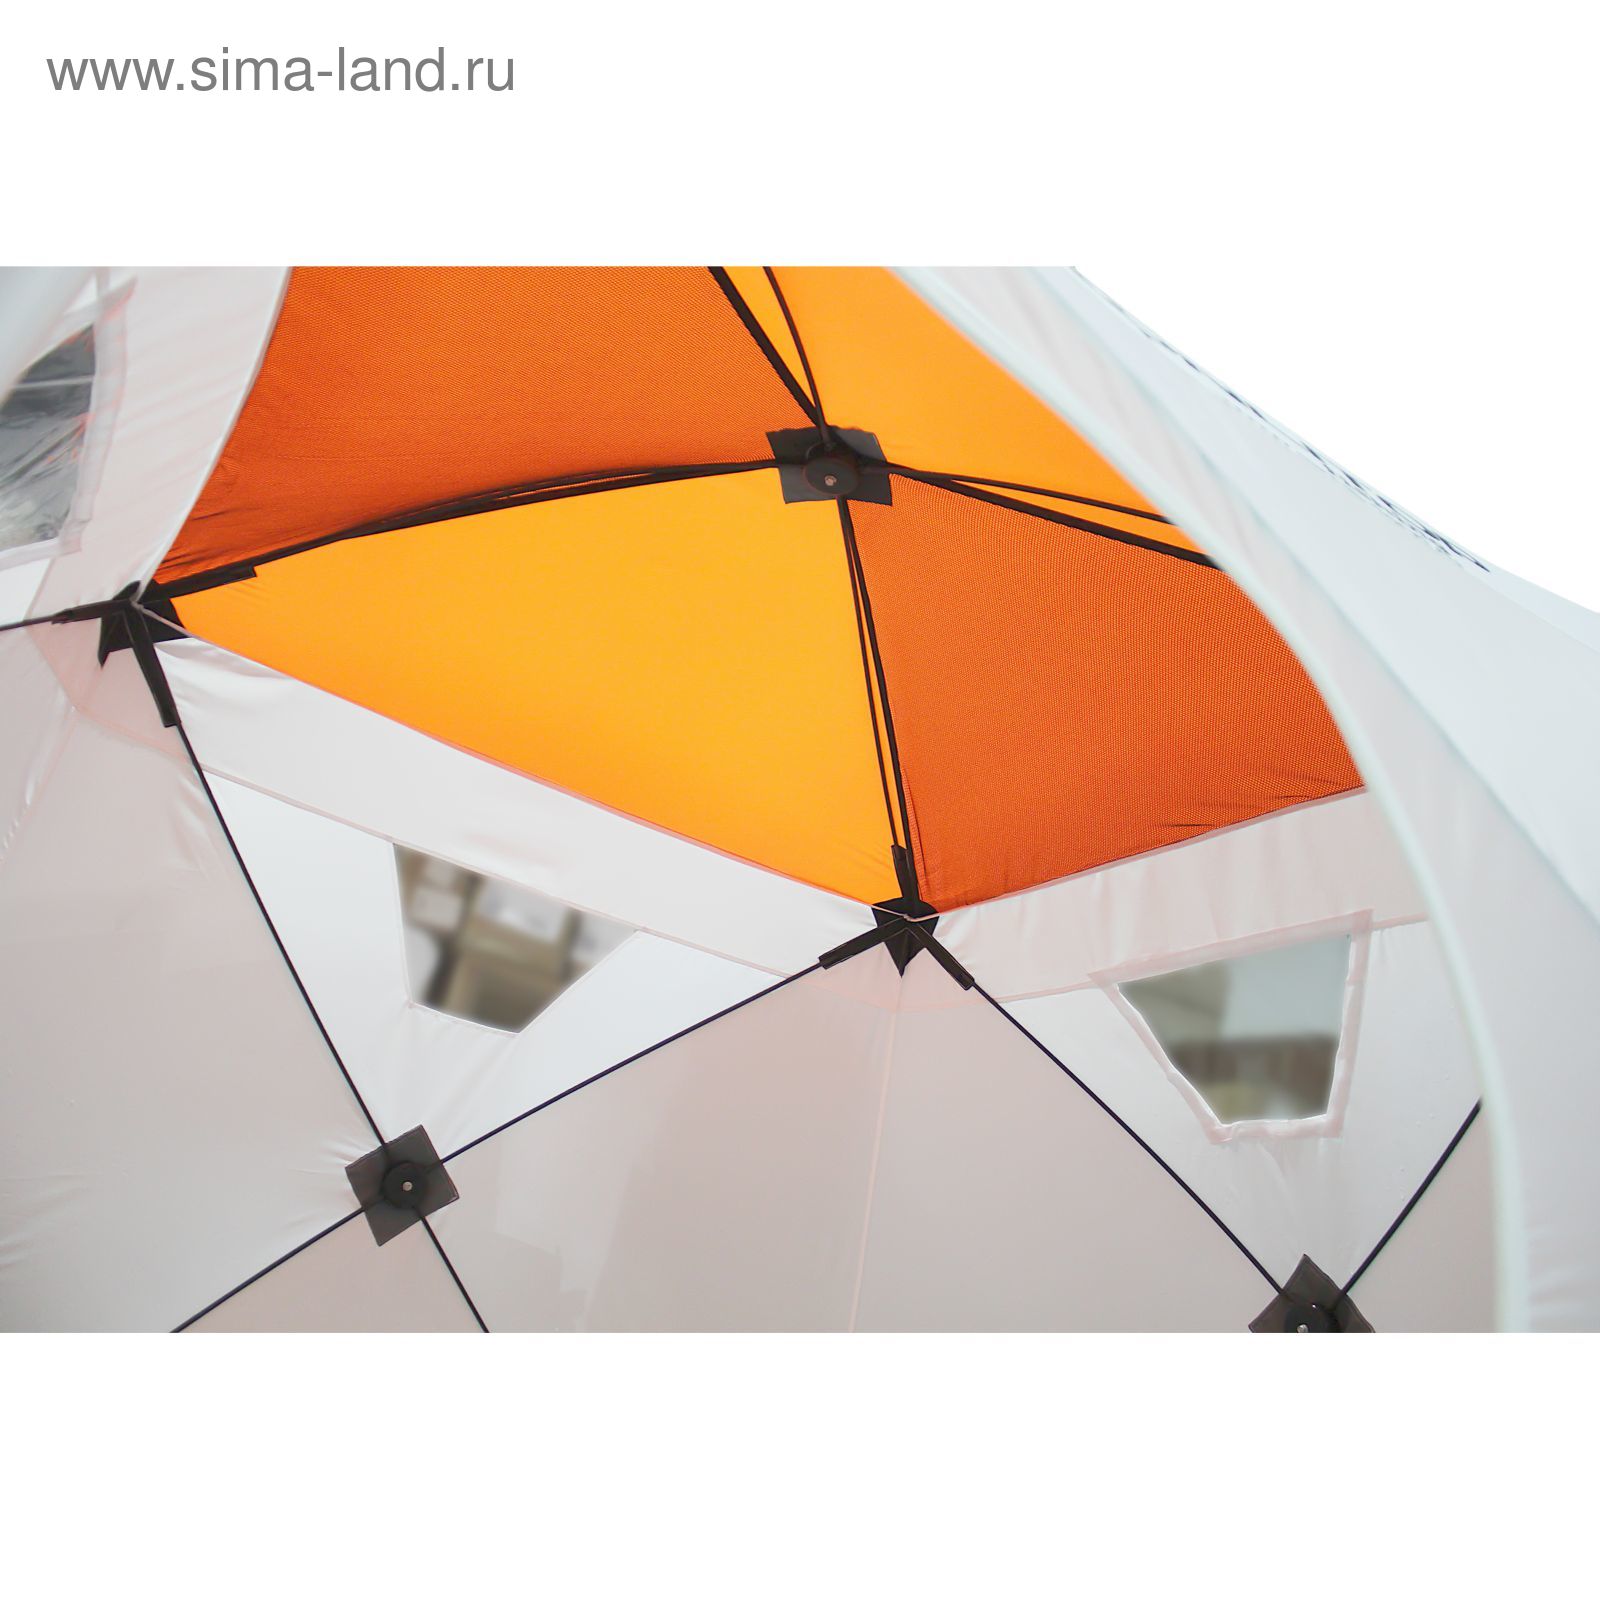 Палатка "Призма Люкс" 170, 1-слойная, цвет бело-оранжевый